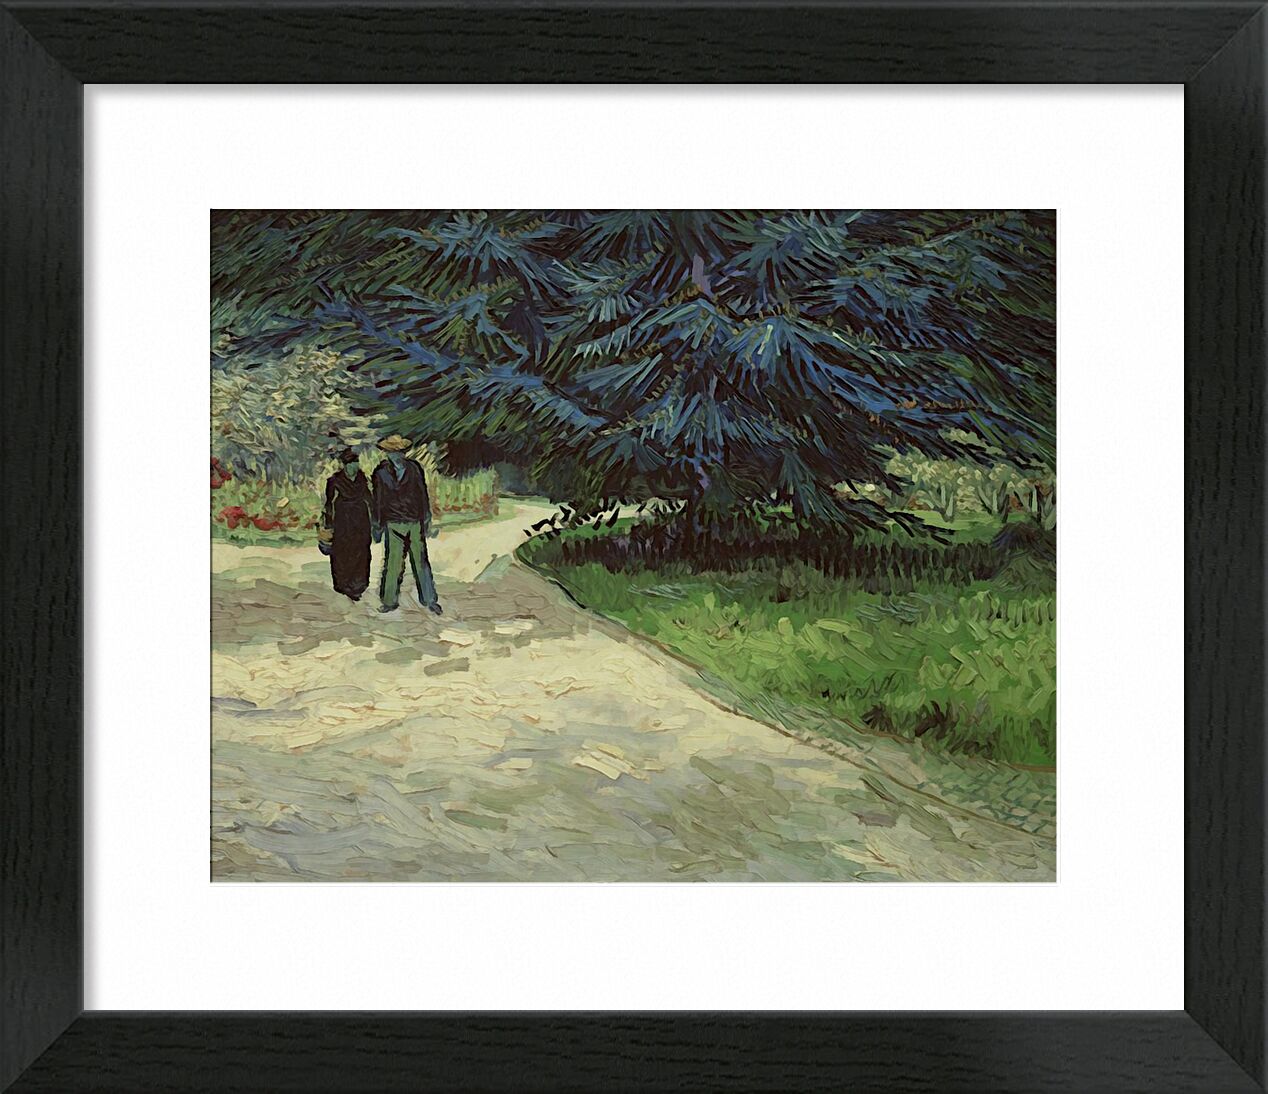 Couple in the Park - Van Gogh von Bildende Kunst, Prodi Art, Van gogh, Malerei, Paar, Park, Baum, Weg, Gemüse